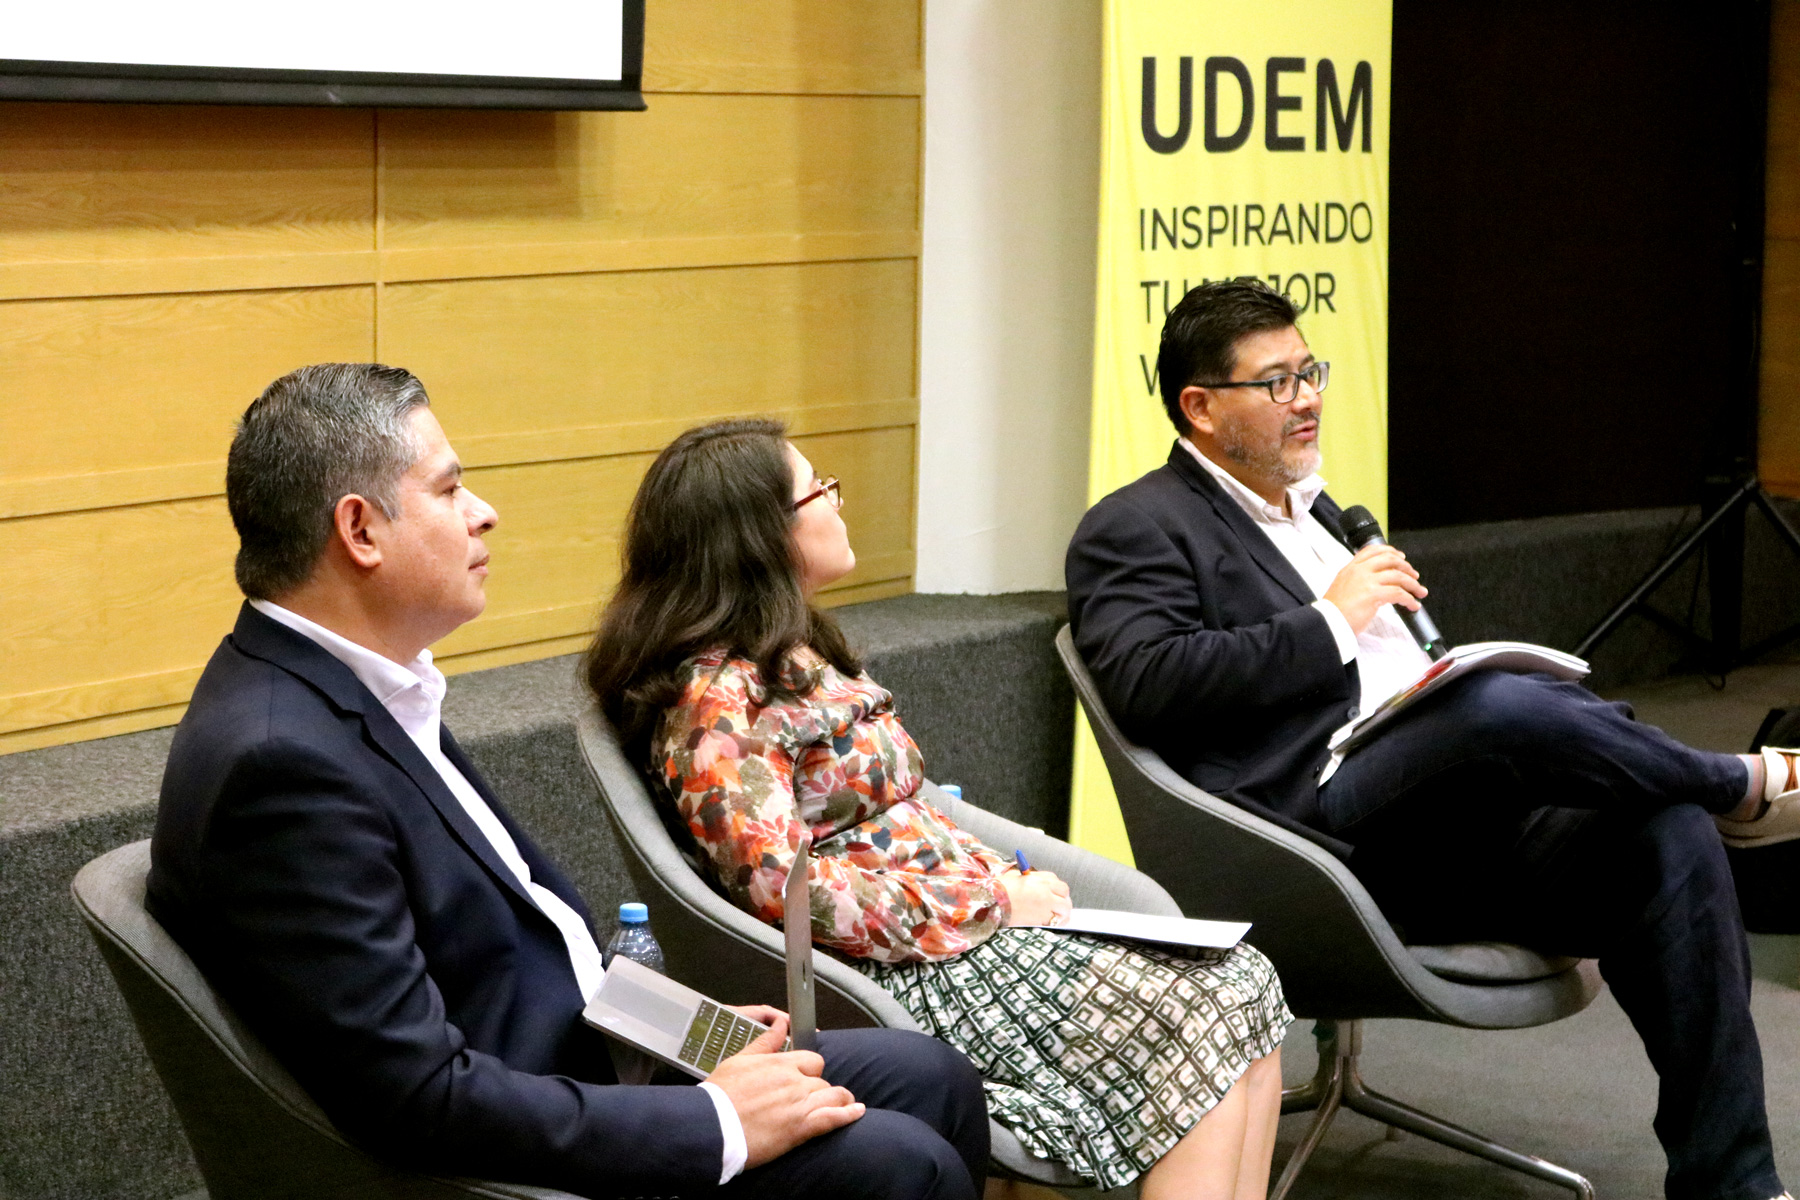 Desconfianza en las instituciones, el reto de la democracia en México